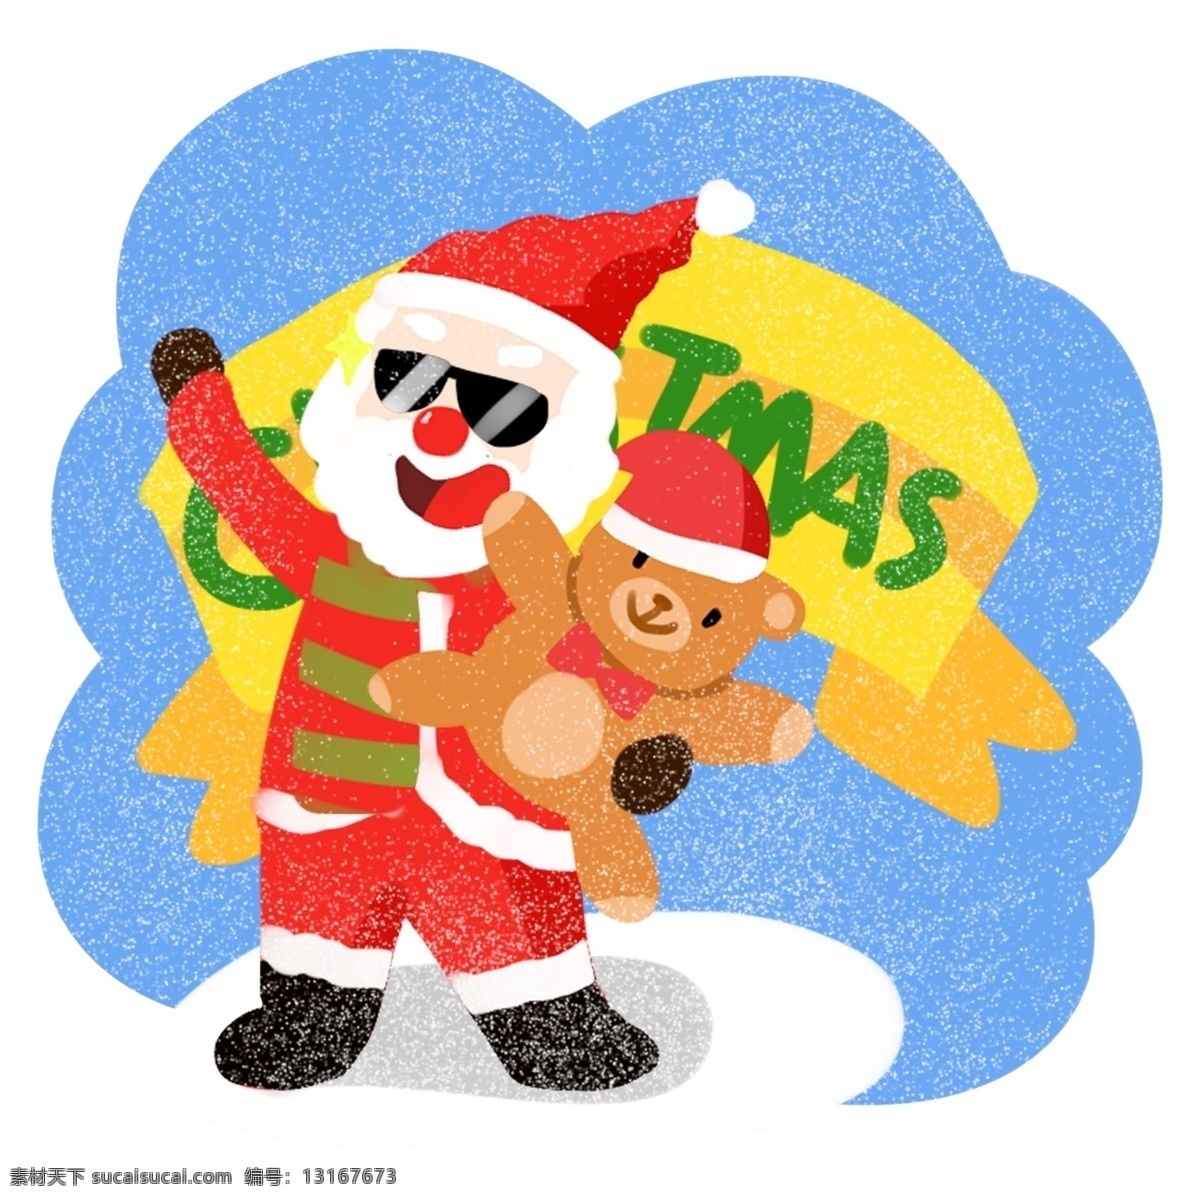 圣诞节 可爱 圣诞老人 卡通 插画 小 熊 合集 圣诞 过节 节日 冬季 淘宝 天猫 海报 活动 促销 大促 送礼物的老人